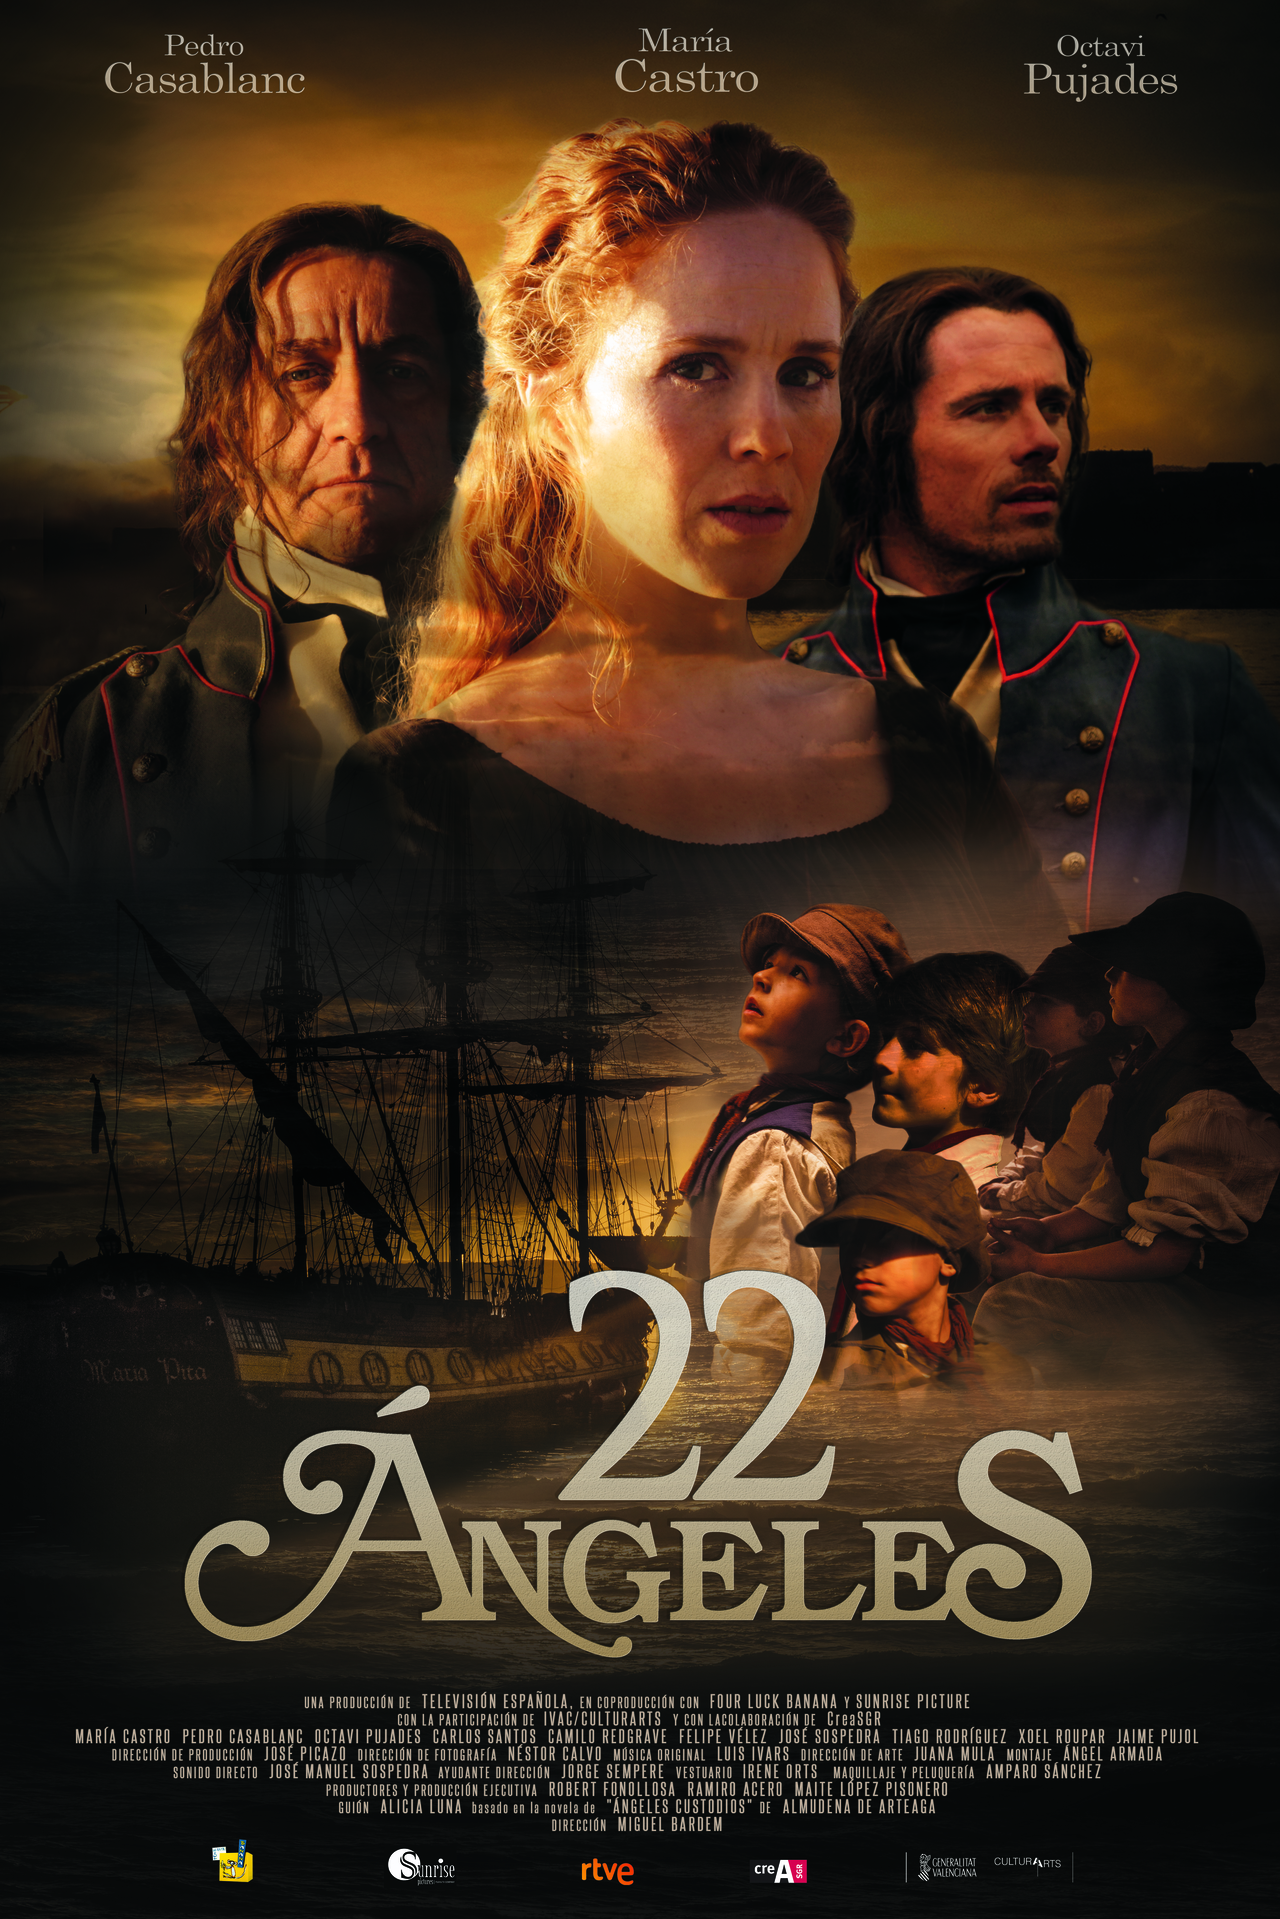  فیلم سینمایی 22 ángeles با حضور Octavi Pujades، Pedro Casablanc و María Castro